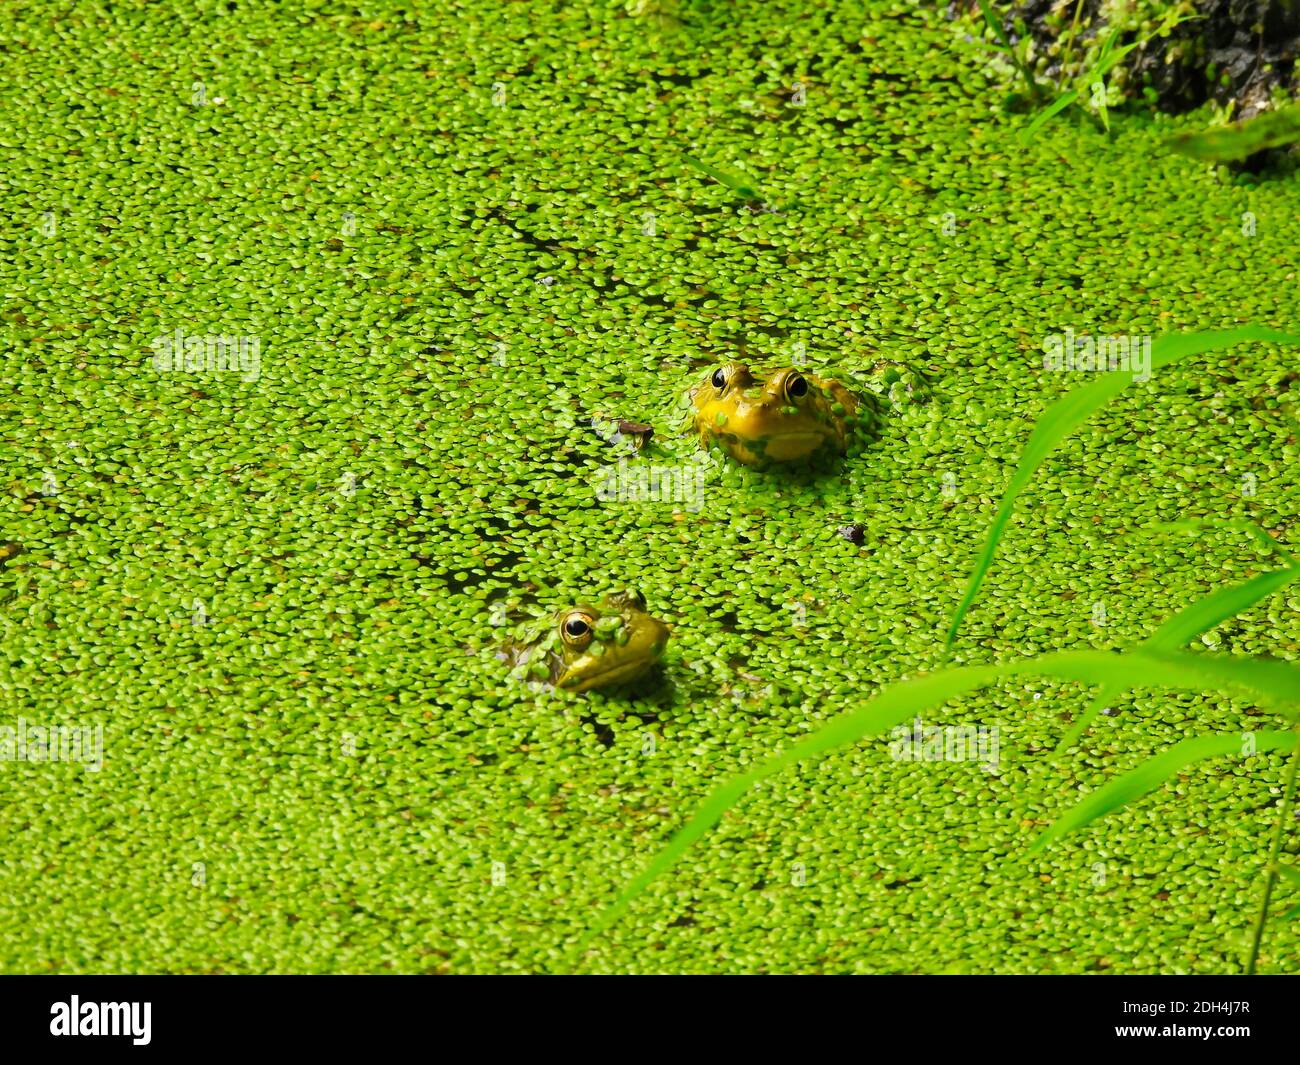 Zwei kleine Baby Junge Bullfrösche mit Körper in Wasser getaucht bedeckt mit hellen grünen Entlein ihre Köpfe, Ohren und Augen sichtbar auf einem sonnigen Sommer Stockfoto